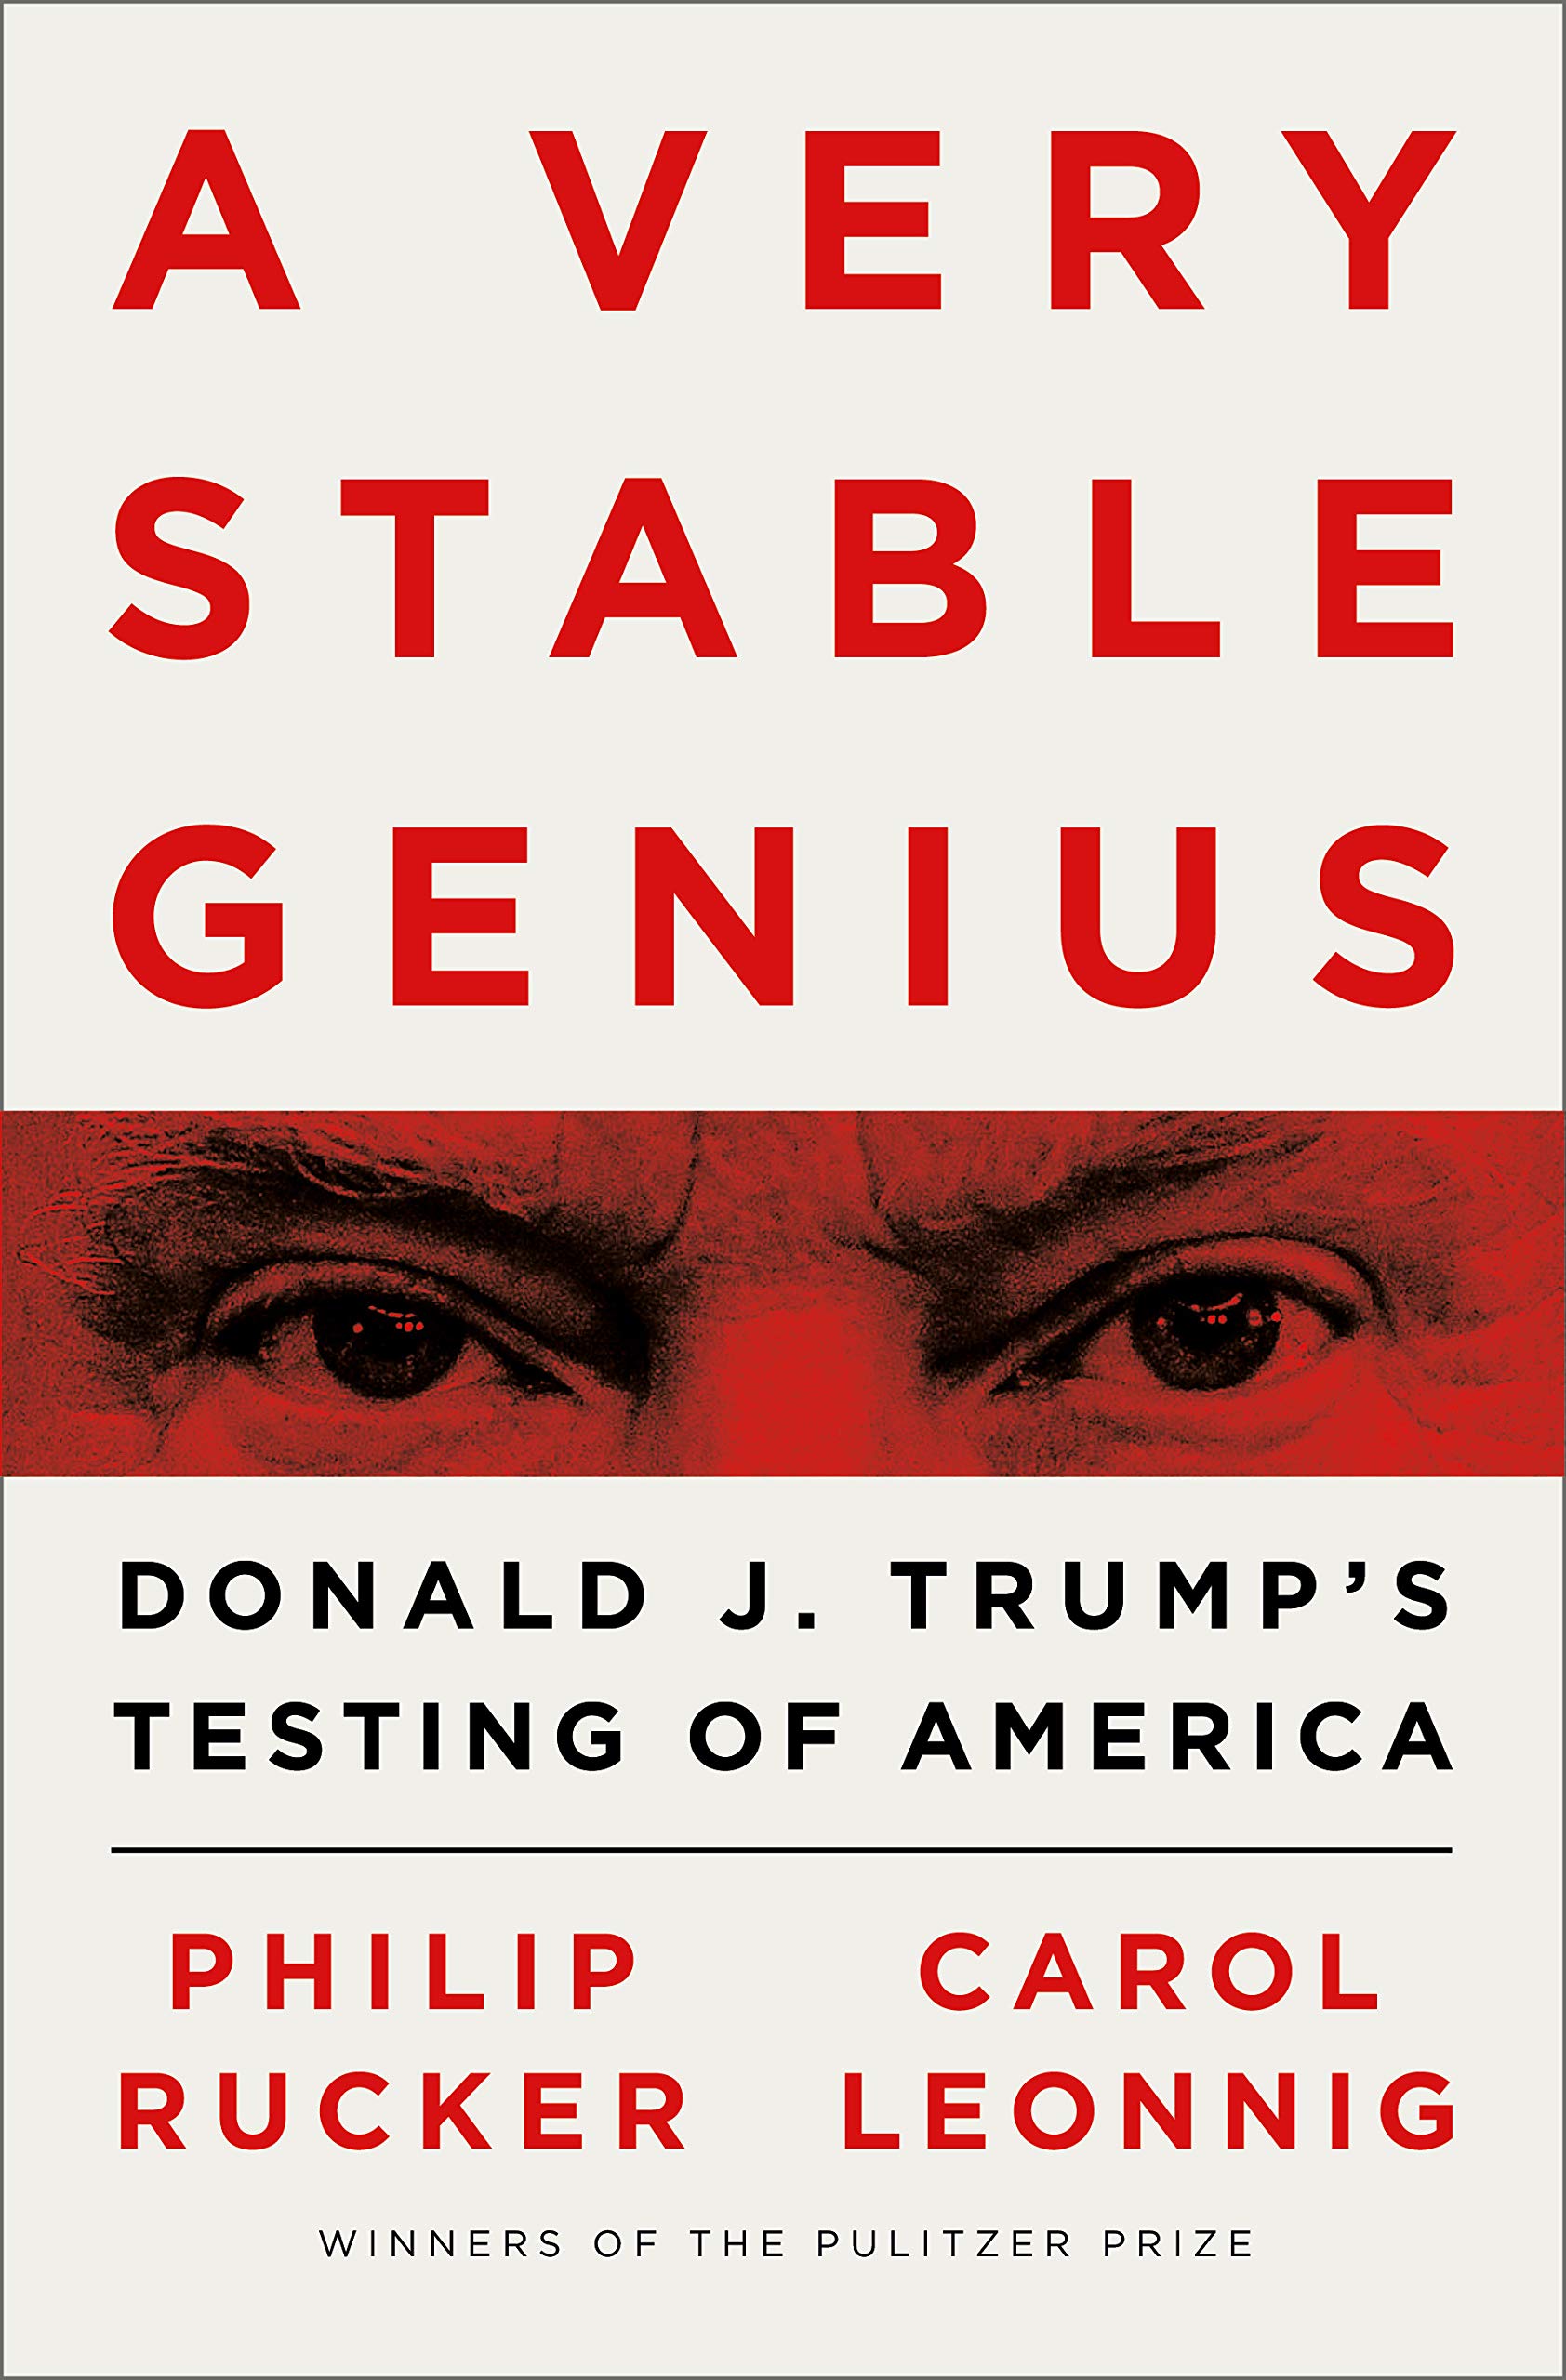 Very Stable Genius | Philip Rucker, Carol Leonnig